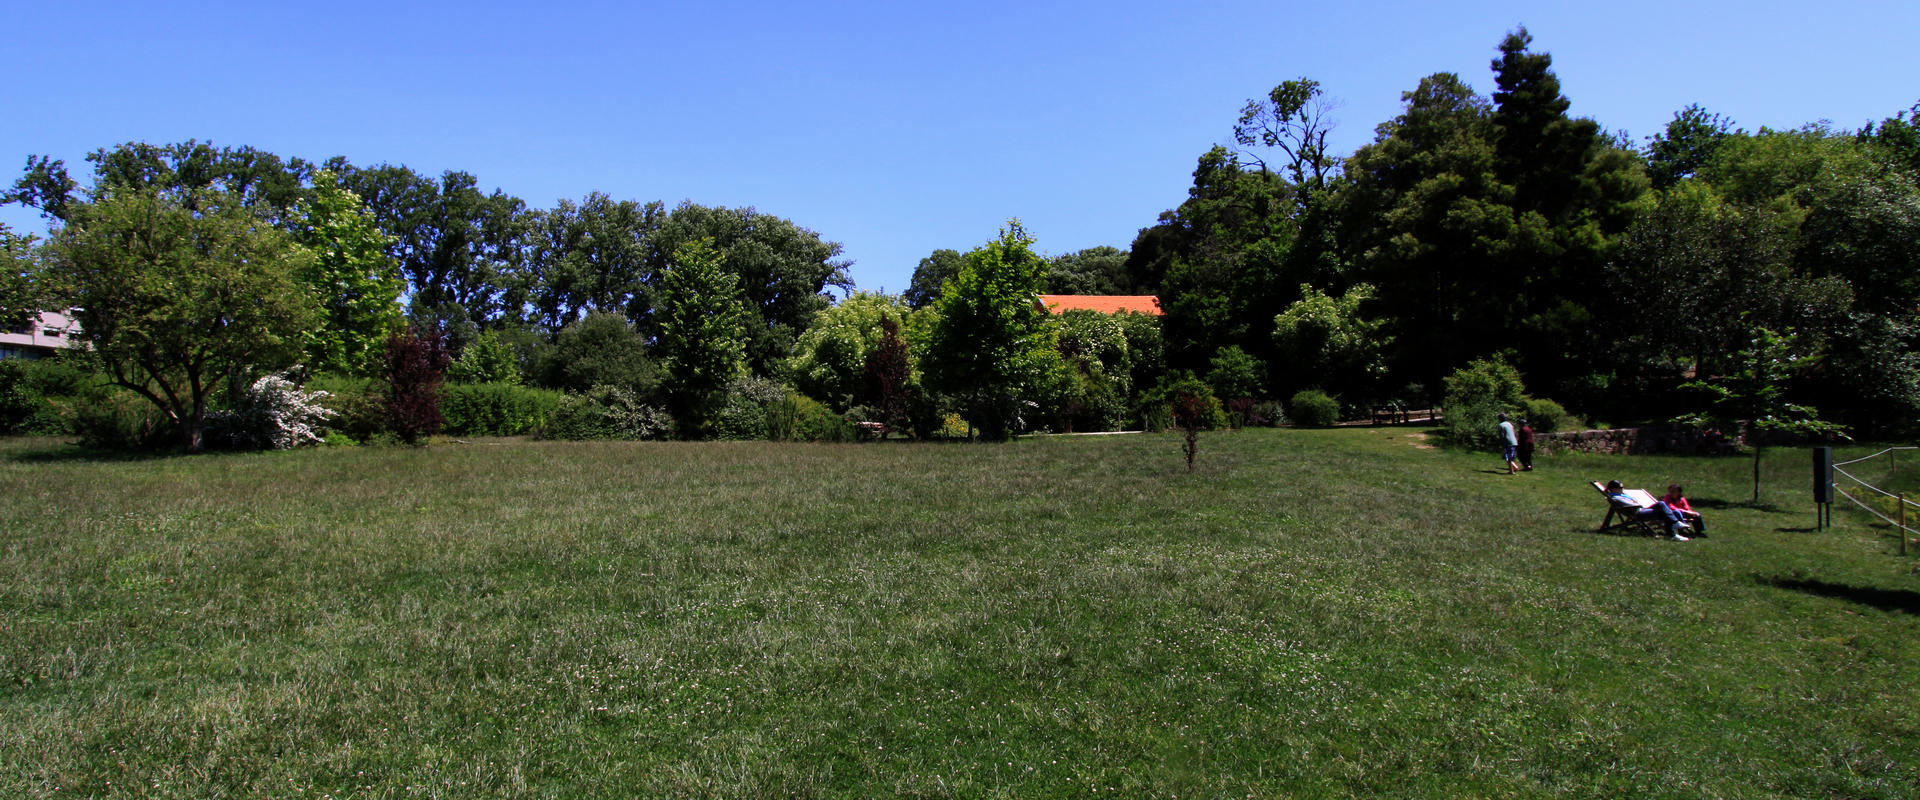 Parque da Cidade de Vila Nova de Gaia